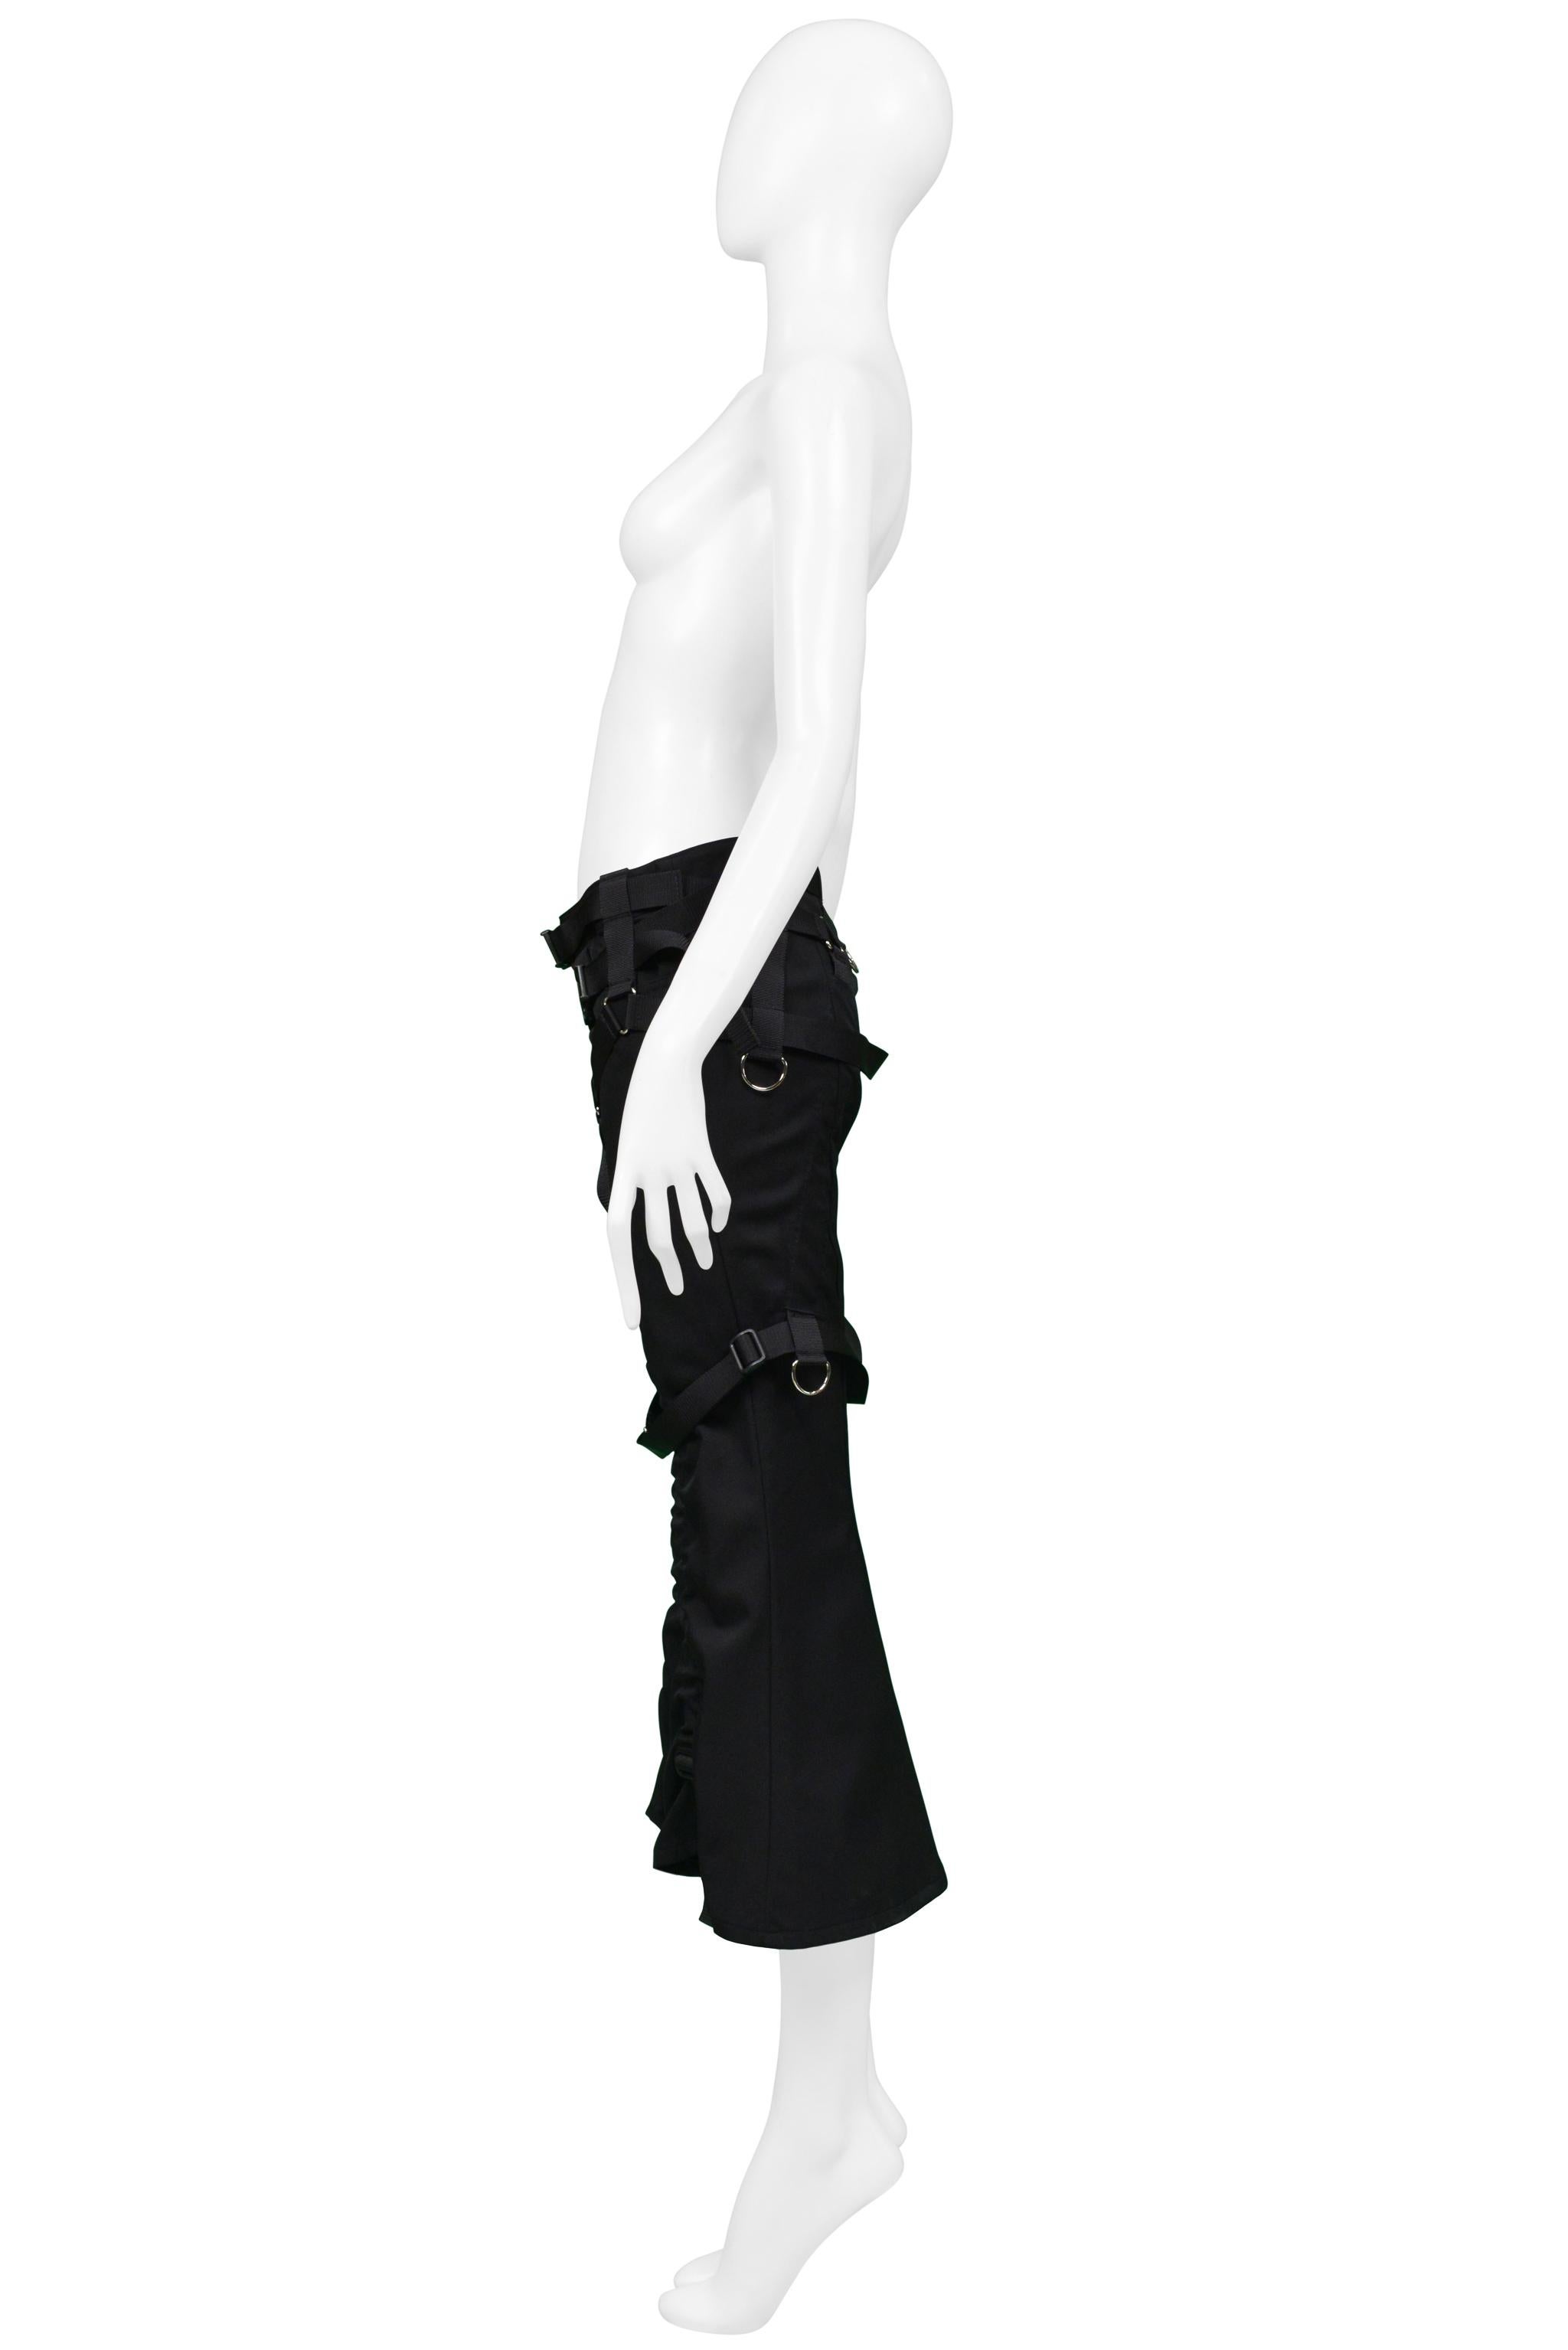 Women's Junya Watanabe for Comme des Garcons Black Wrap Parachute Pants 2003 For Sale